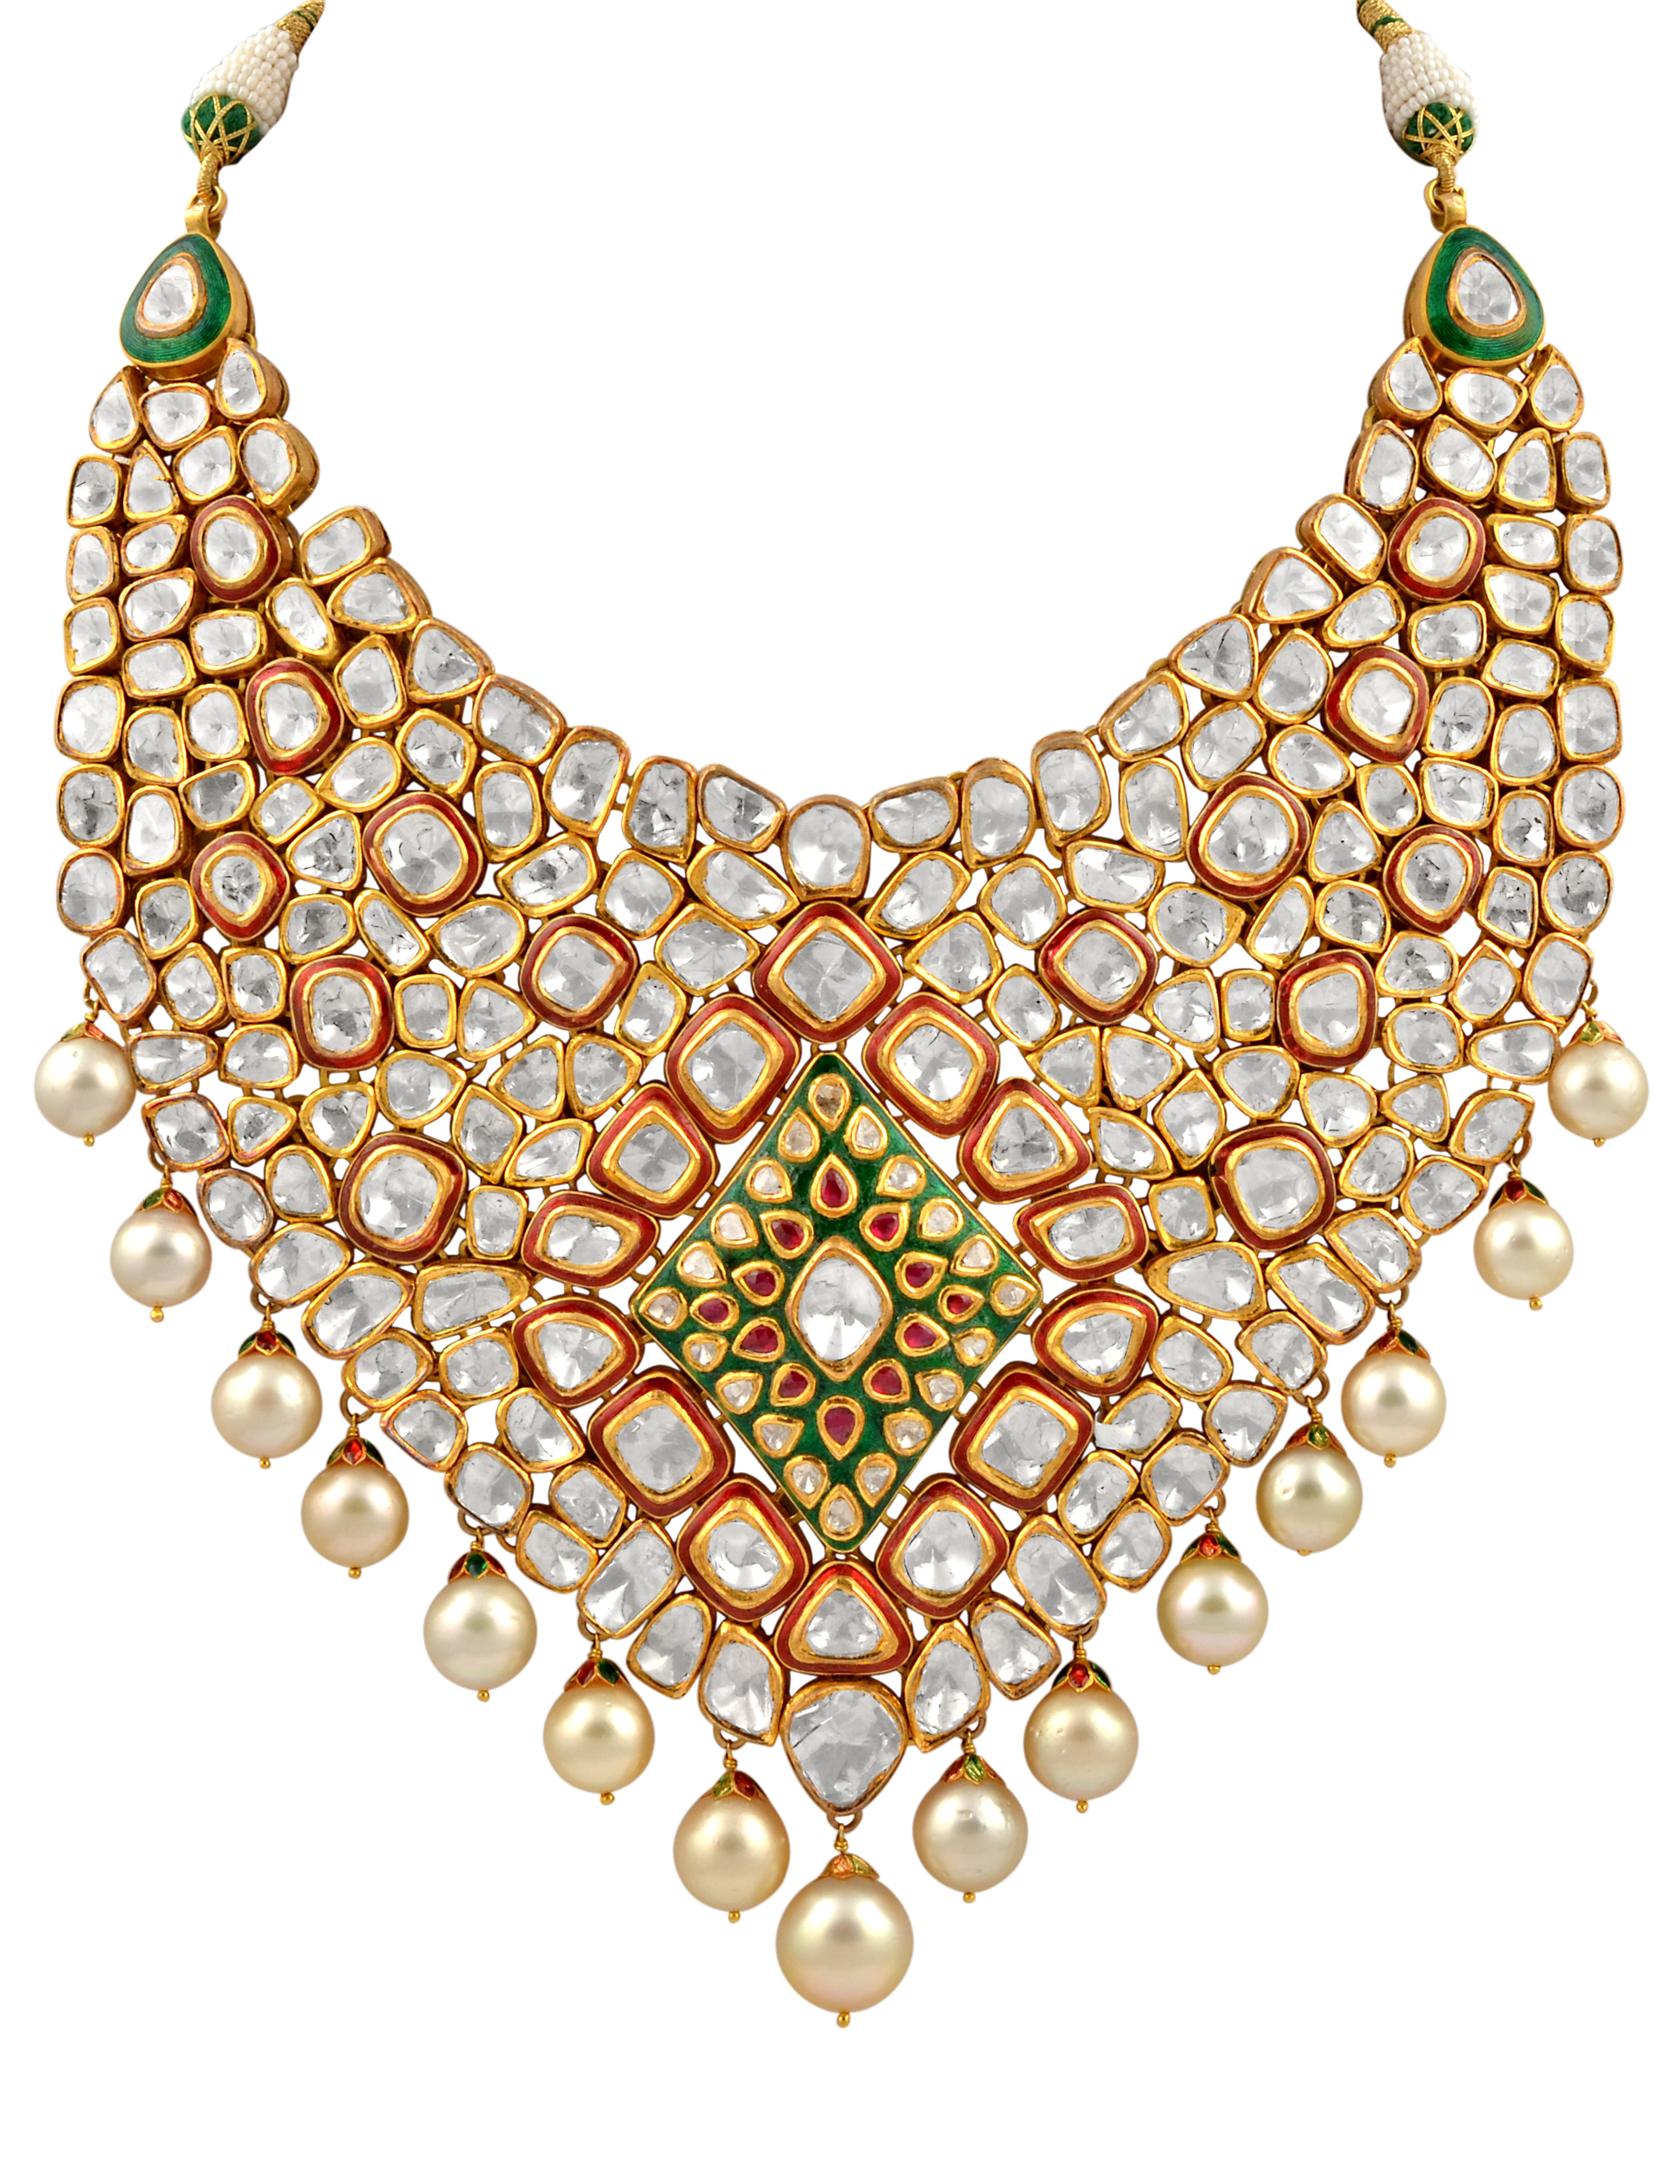 Wir präsentieren die atemberaubende Maharajas & Mughal Magnificent Halskette, begleitet von atemberaubenden schweren antiken Gold-Ohrringen. Diese Jadau Traditional Kundan echte Polki Rose Cut Diamond Set ist in 18 Karat Gelbgold gefertigt, und